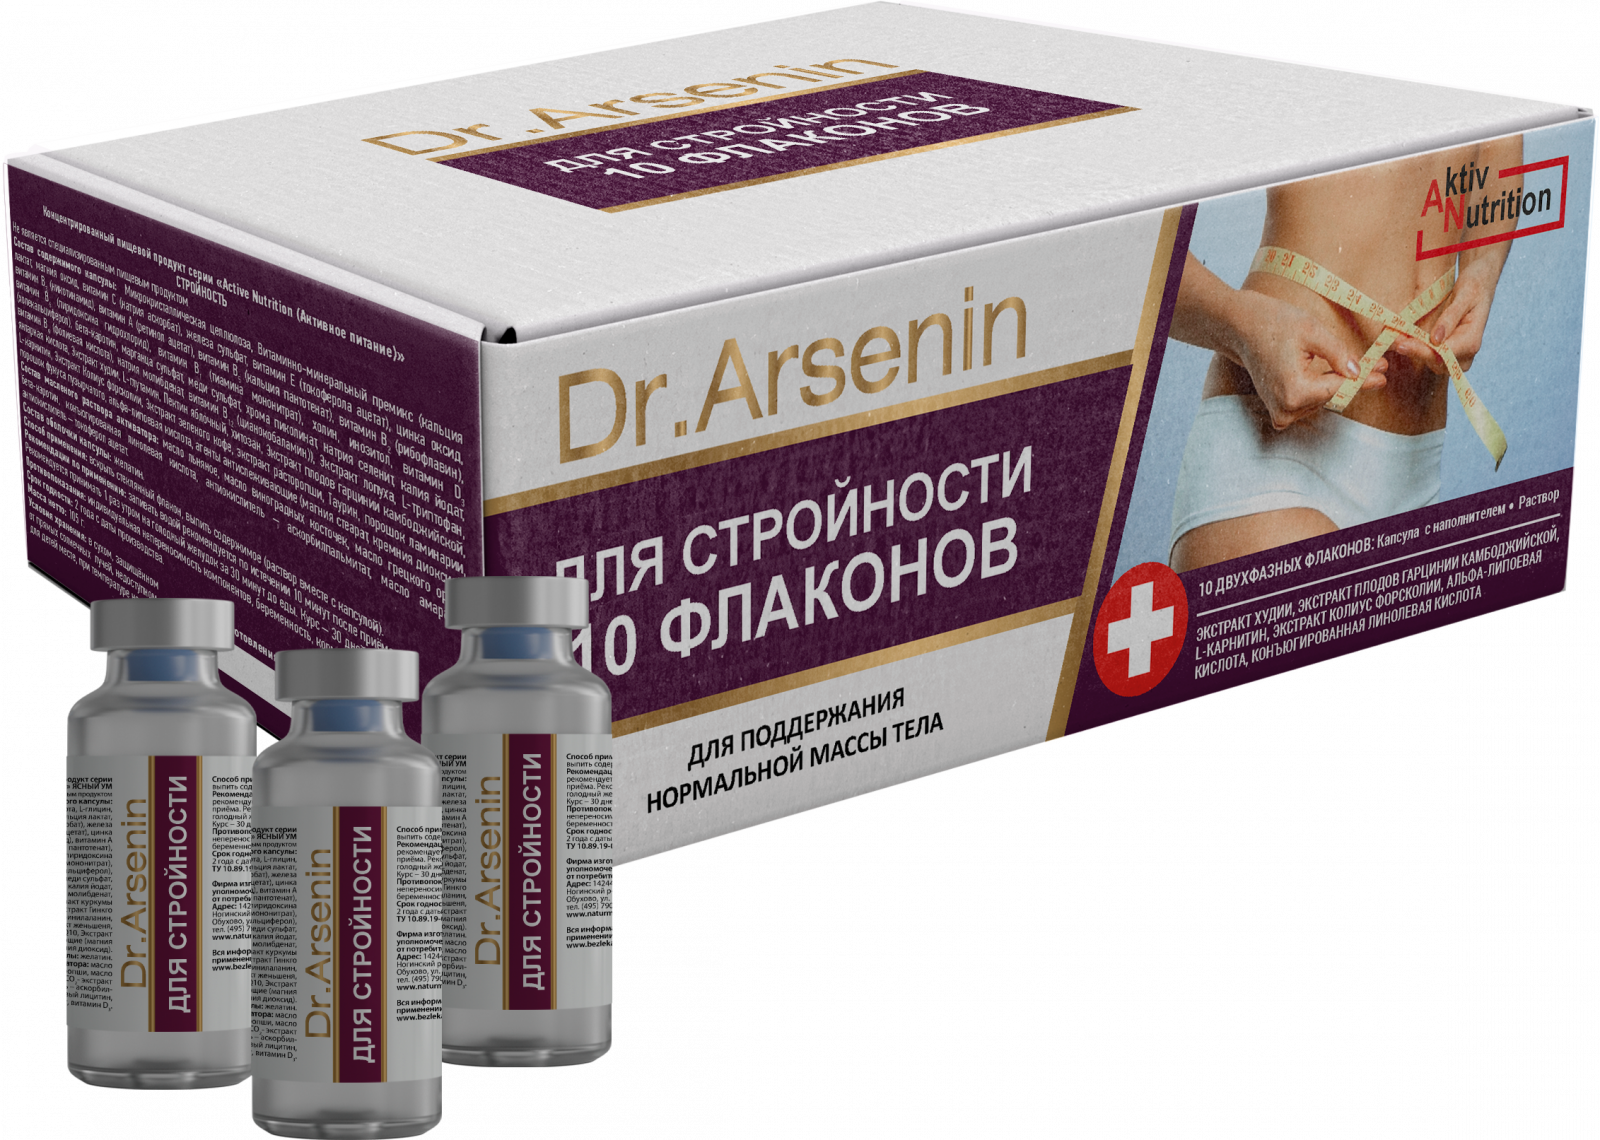 Пищевые добавки для похудения «"Active nutrition" СТРОЙНОСТЬ Dr. Arsenin 10 флаконов» - Капсулы